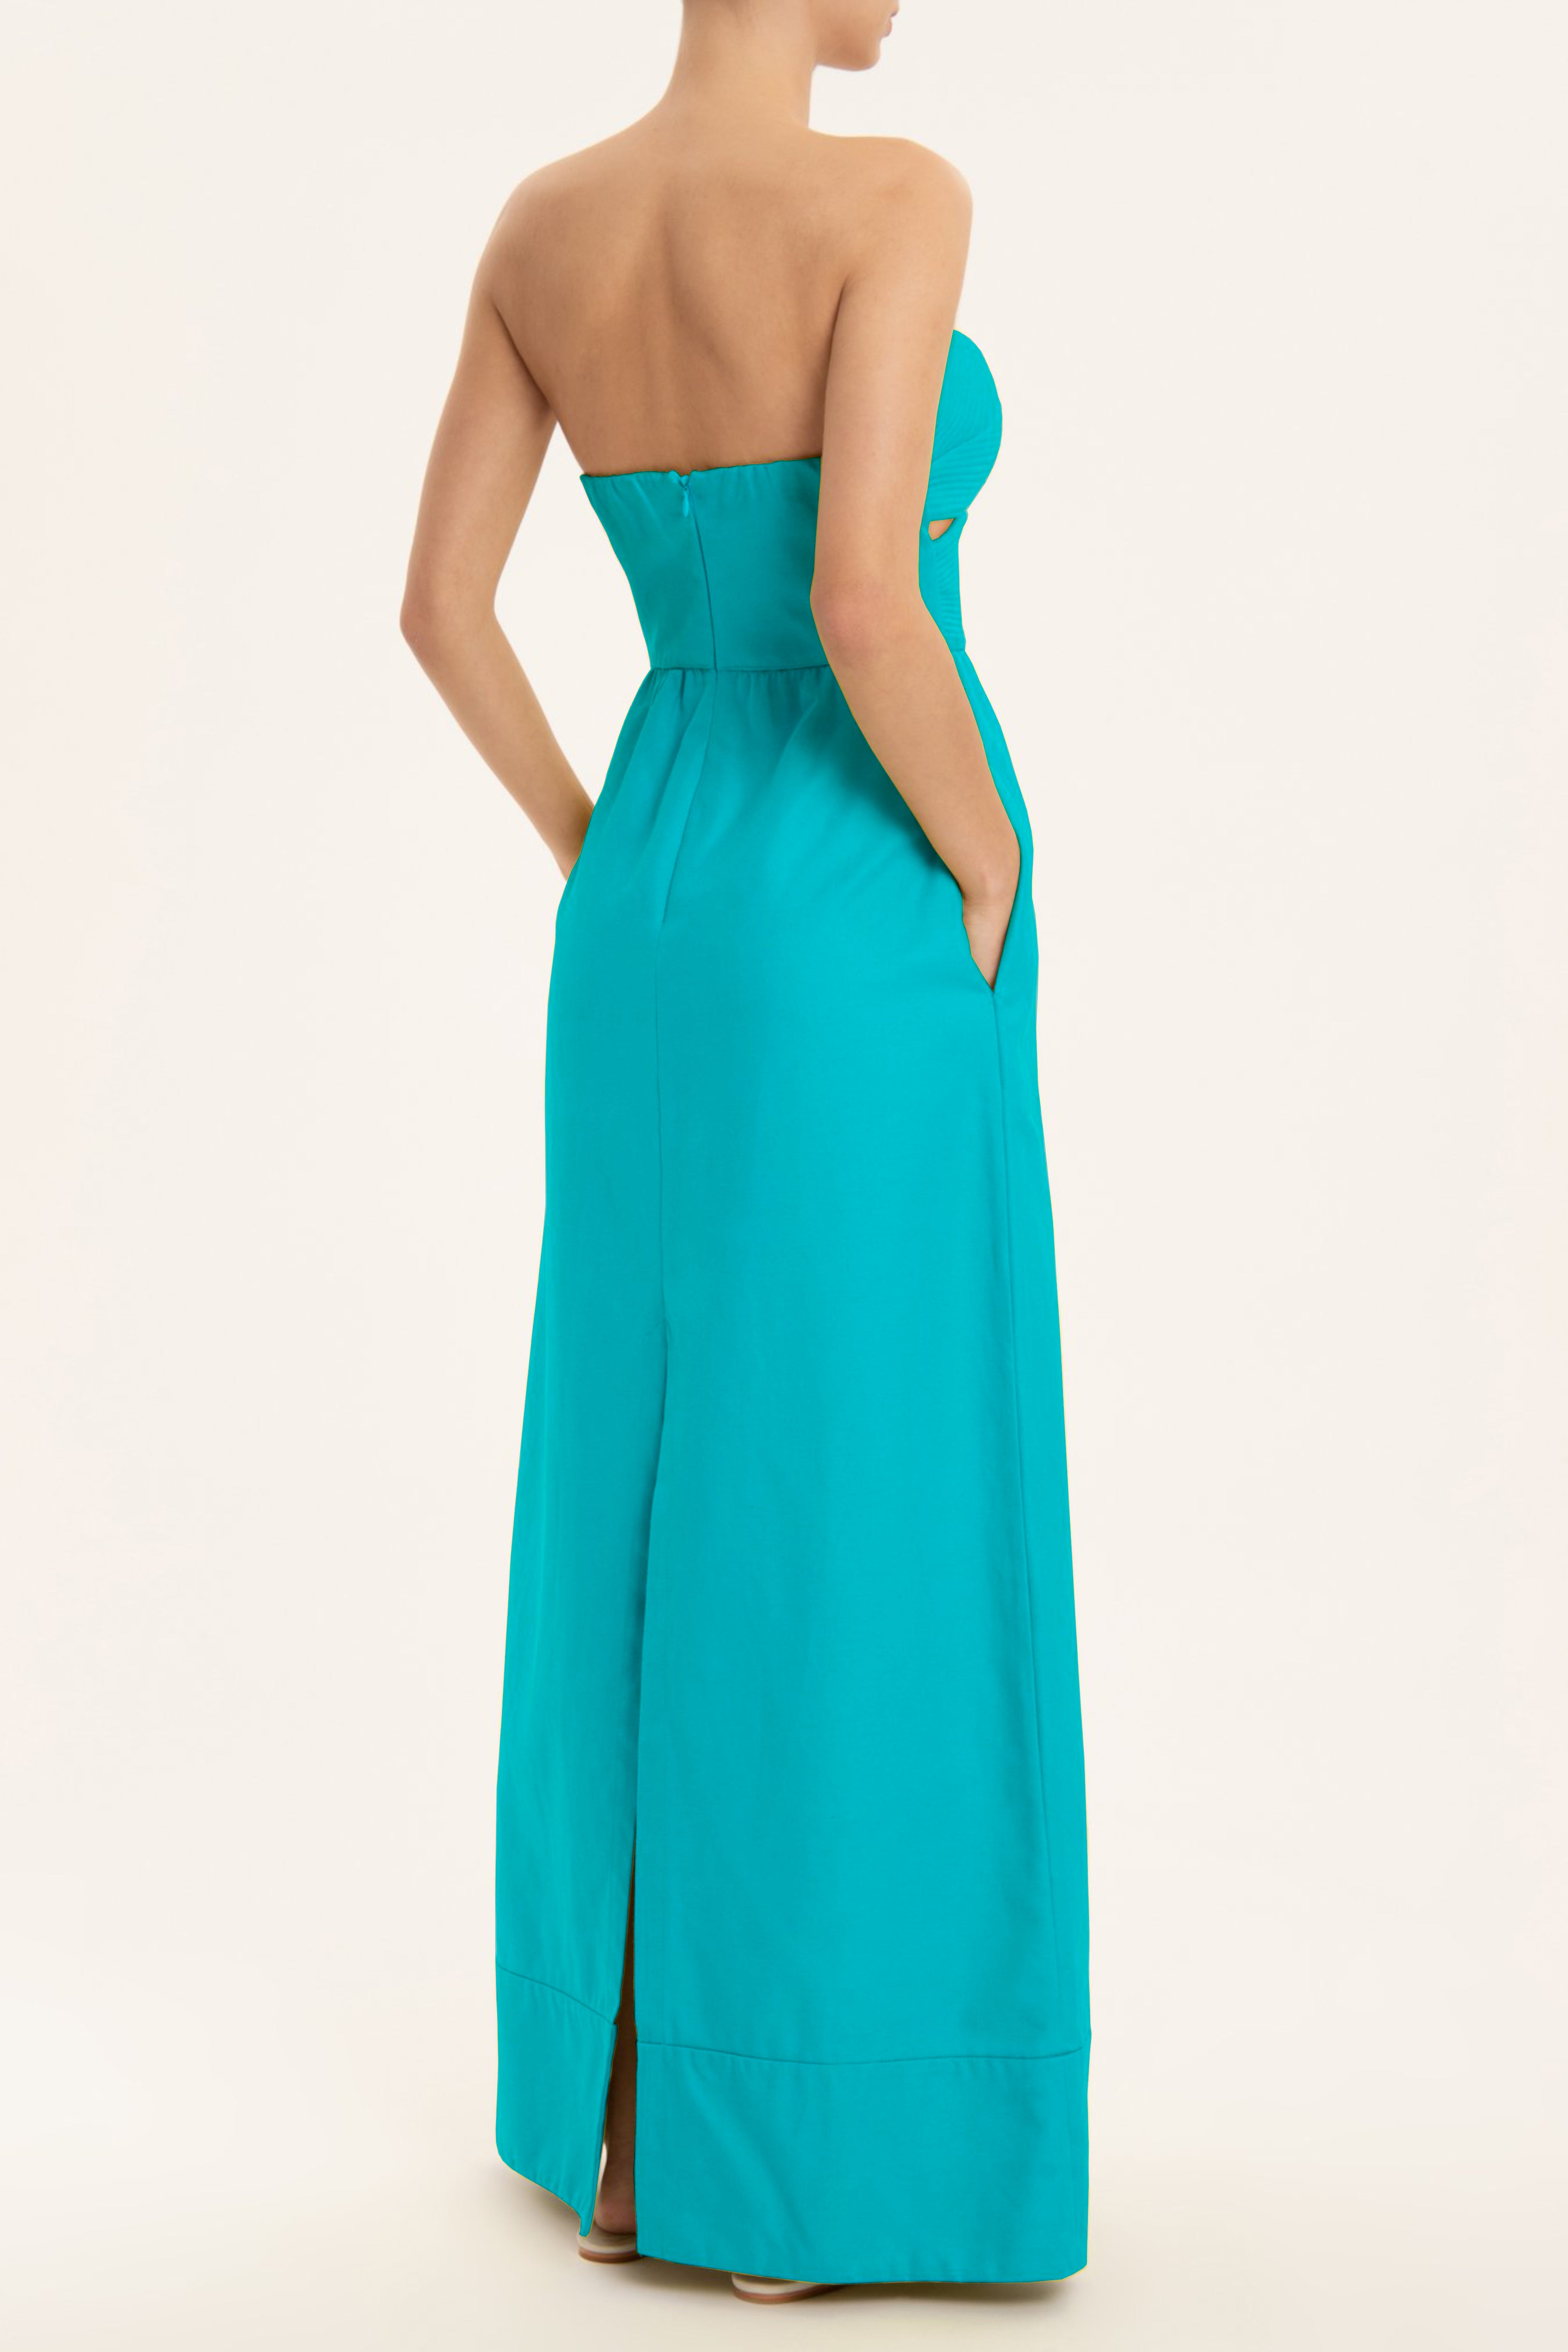 Matelasse Strapless Long Dress Turquoise Back